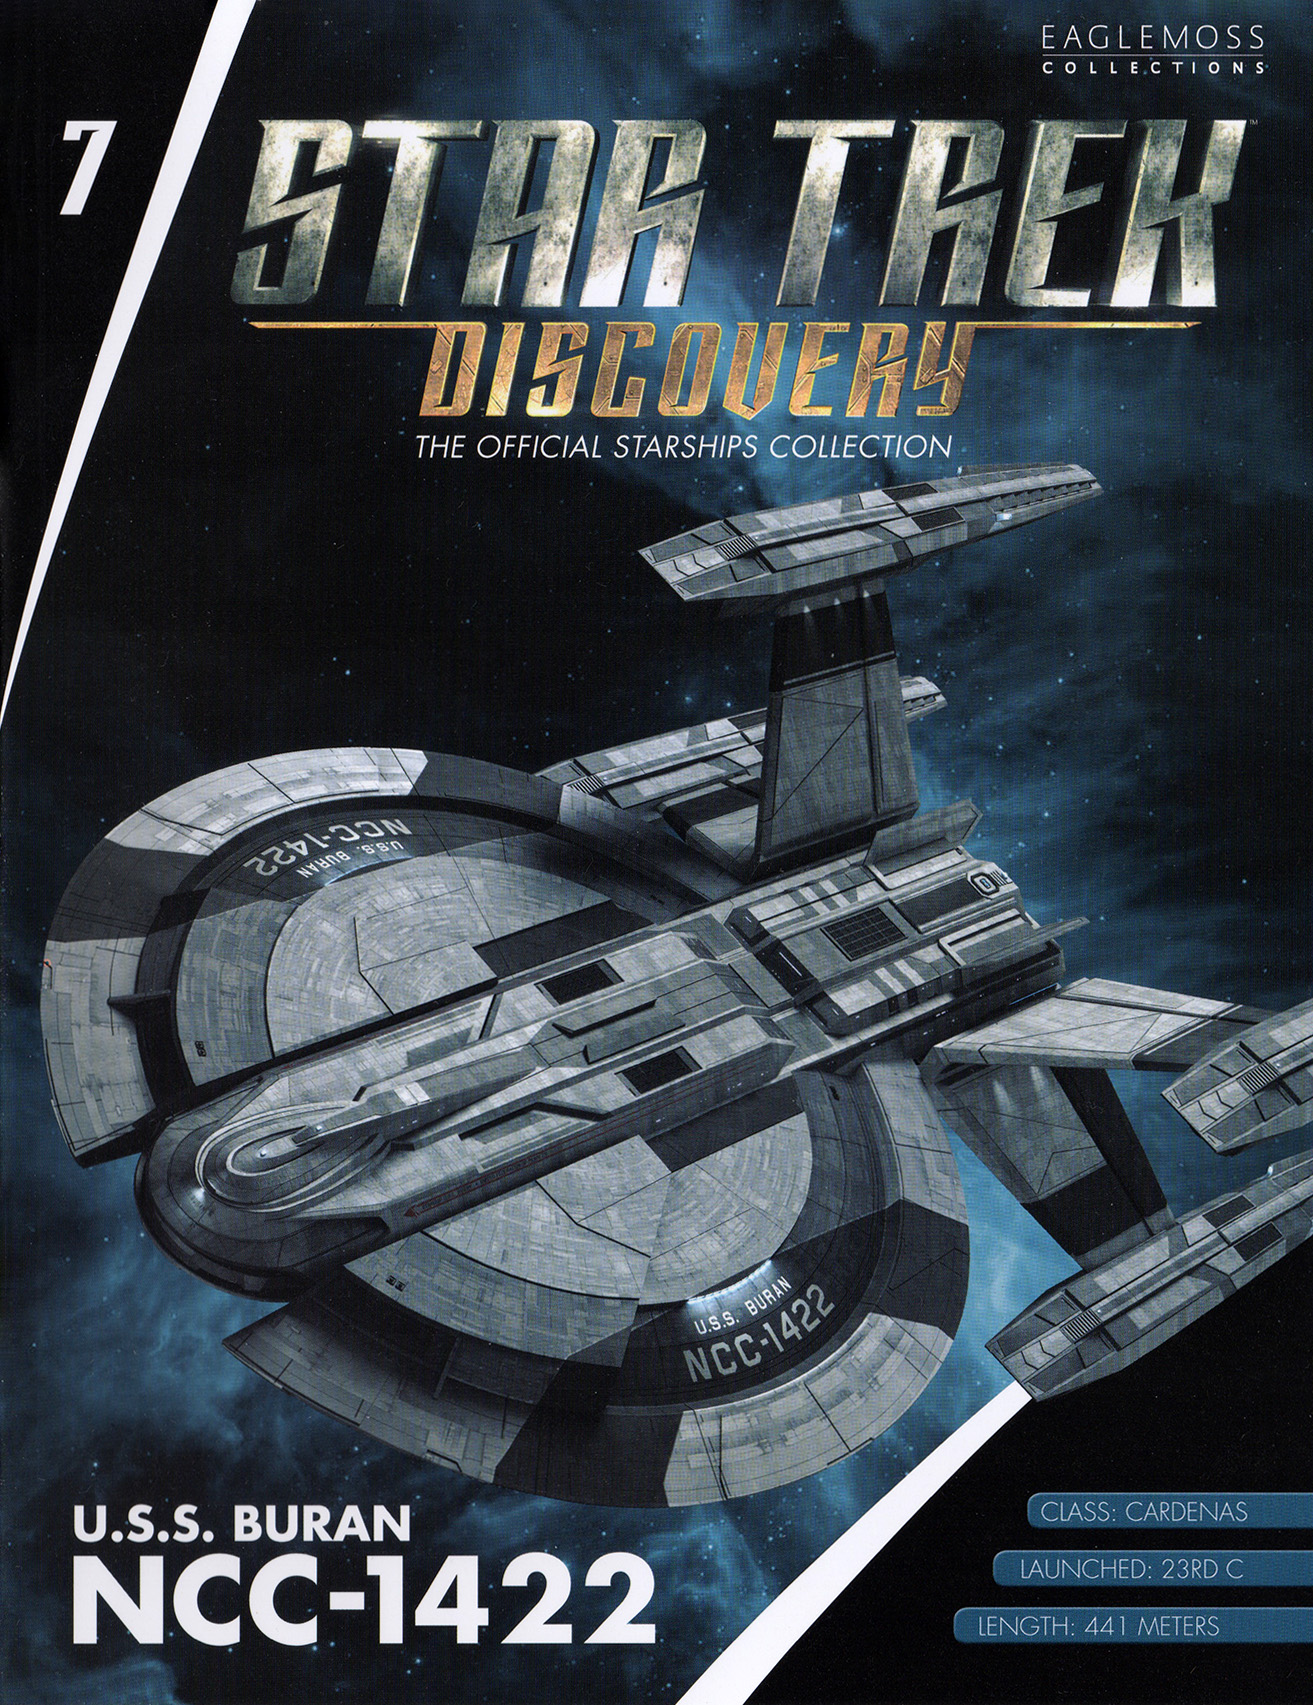 Eaglemoss Star Trek Starships Discovery Issue 7